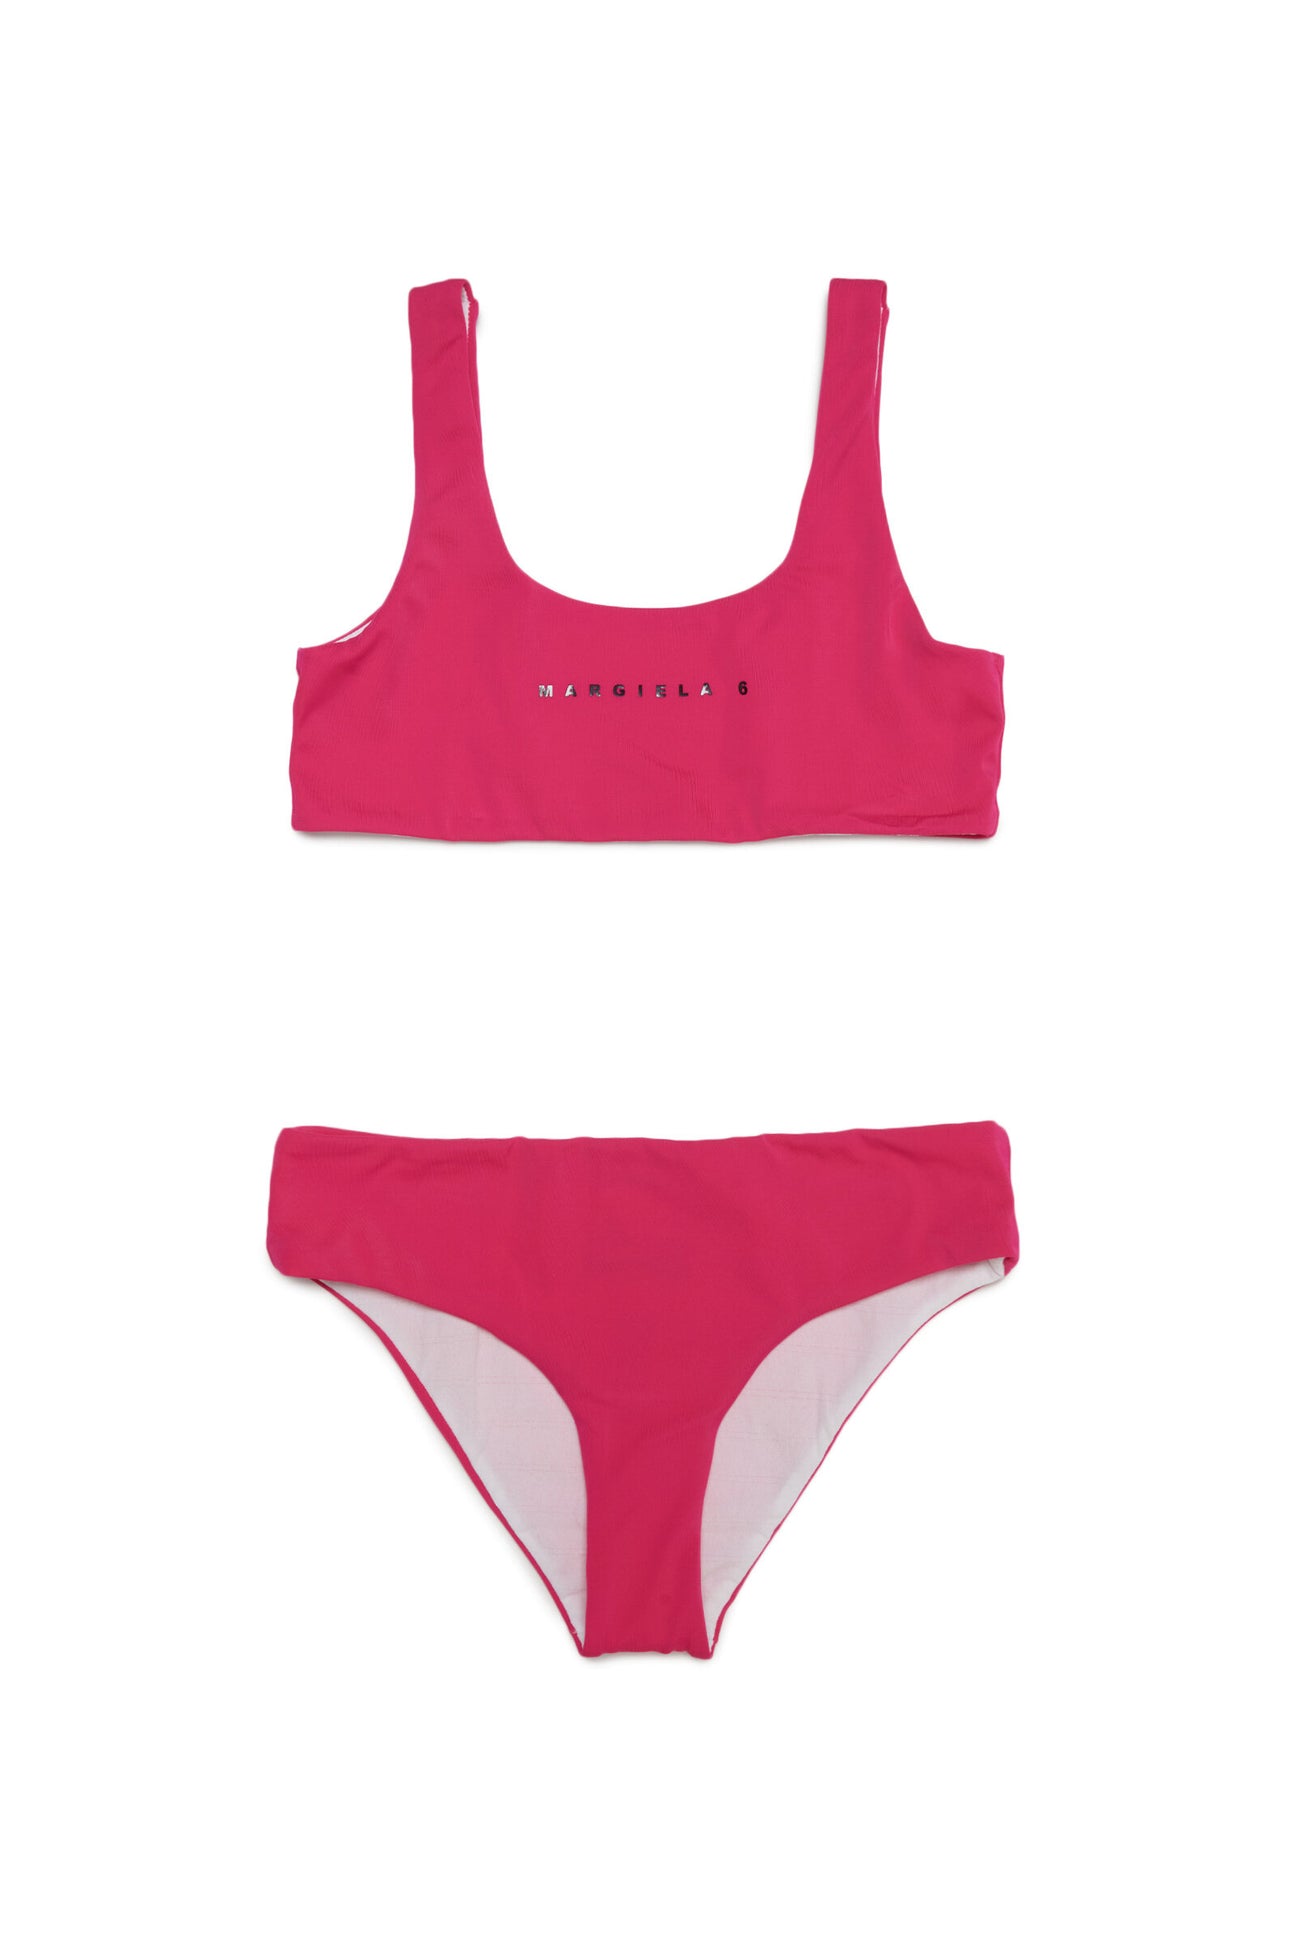 Pink sporty bikini swimming costume with minimal logo Pink sporty bikini swimming costume with minimal logo